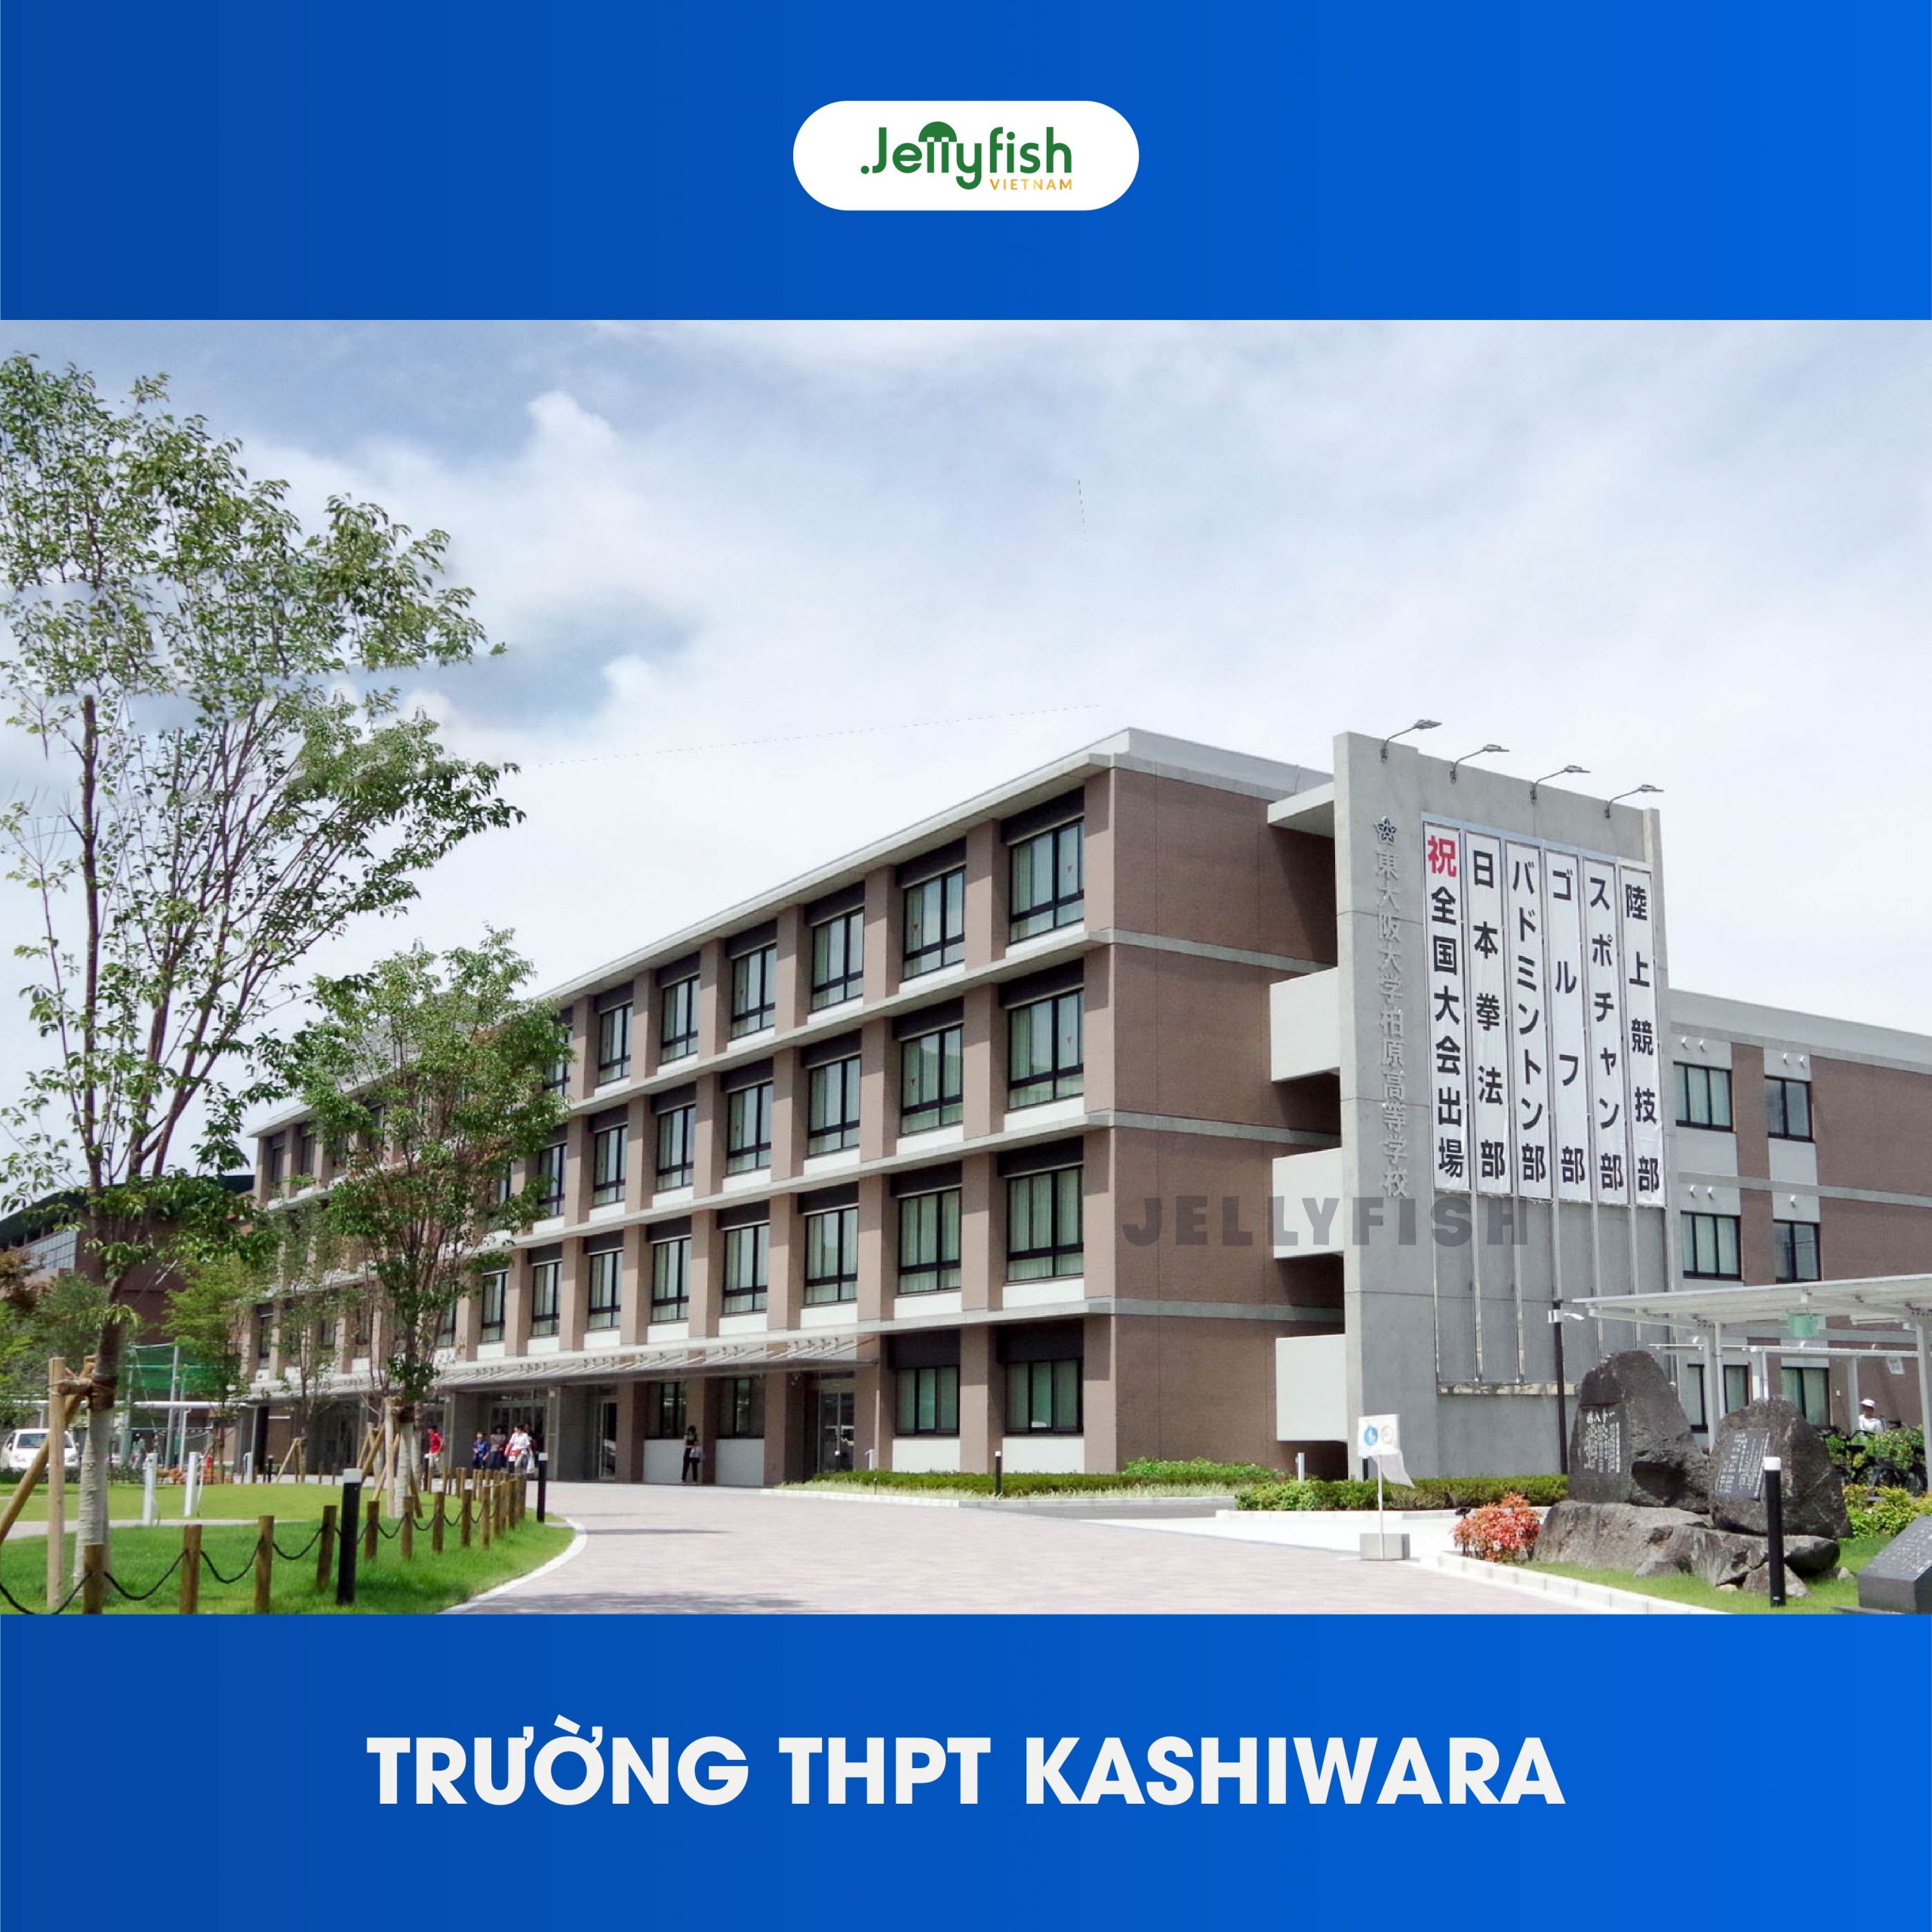 Trường THPT Kashiwara